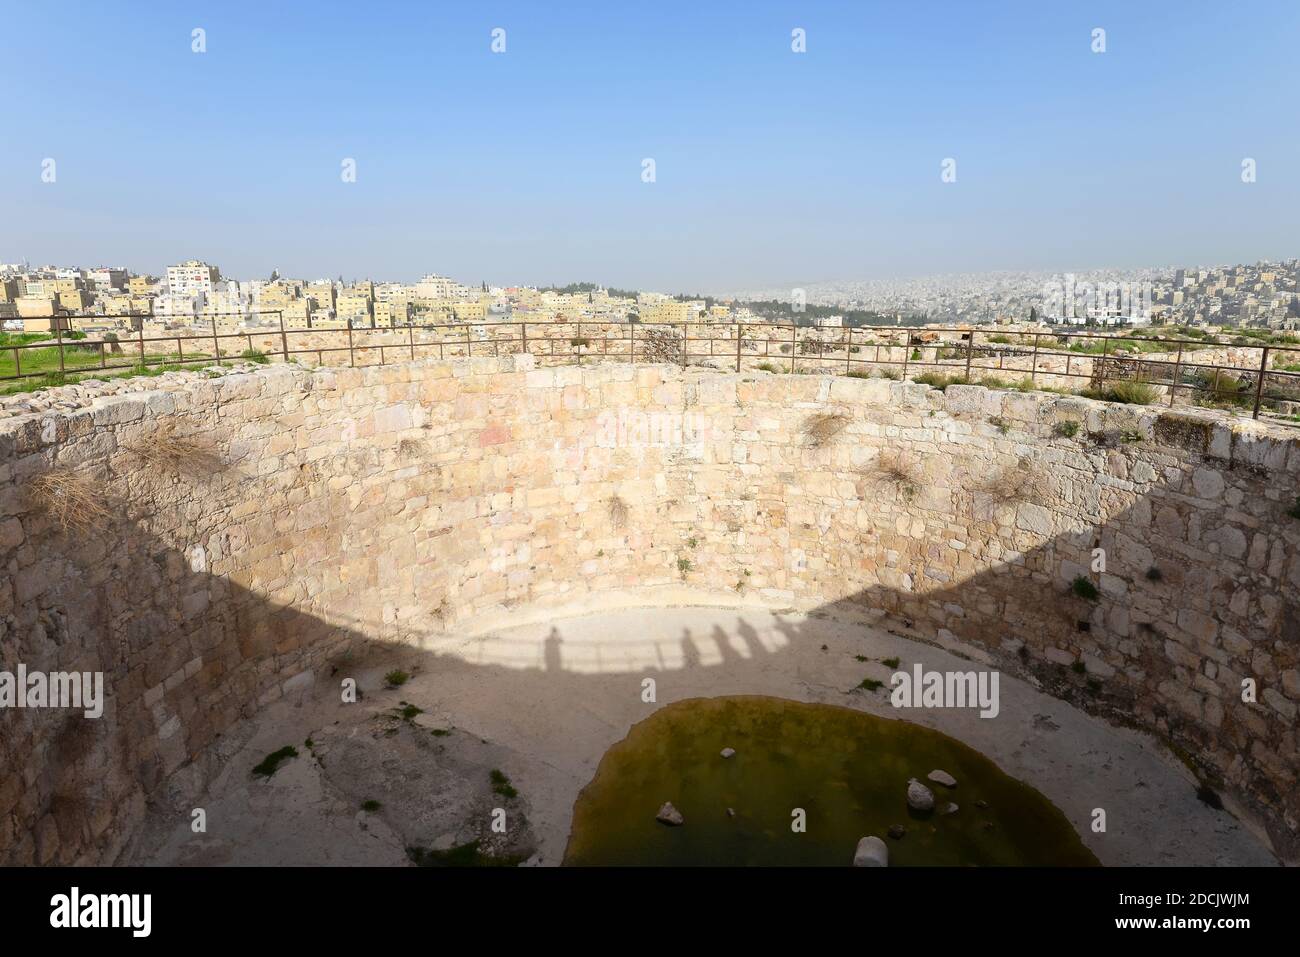 Énorme réservoir d'eau creusé dans la Citadelle d'Amman, en Jordanie. Ancien réservoir d'eau construit avec des pierres. Emplacement aussi connu sous le nom de Jabal Al-QAl'a. Banque D'Images